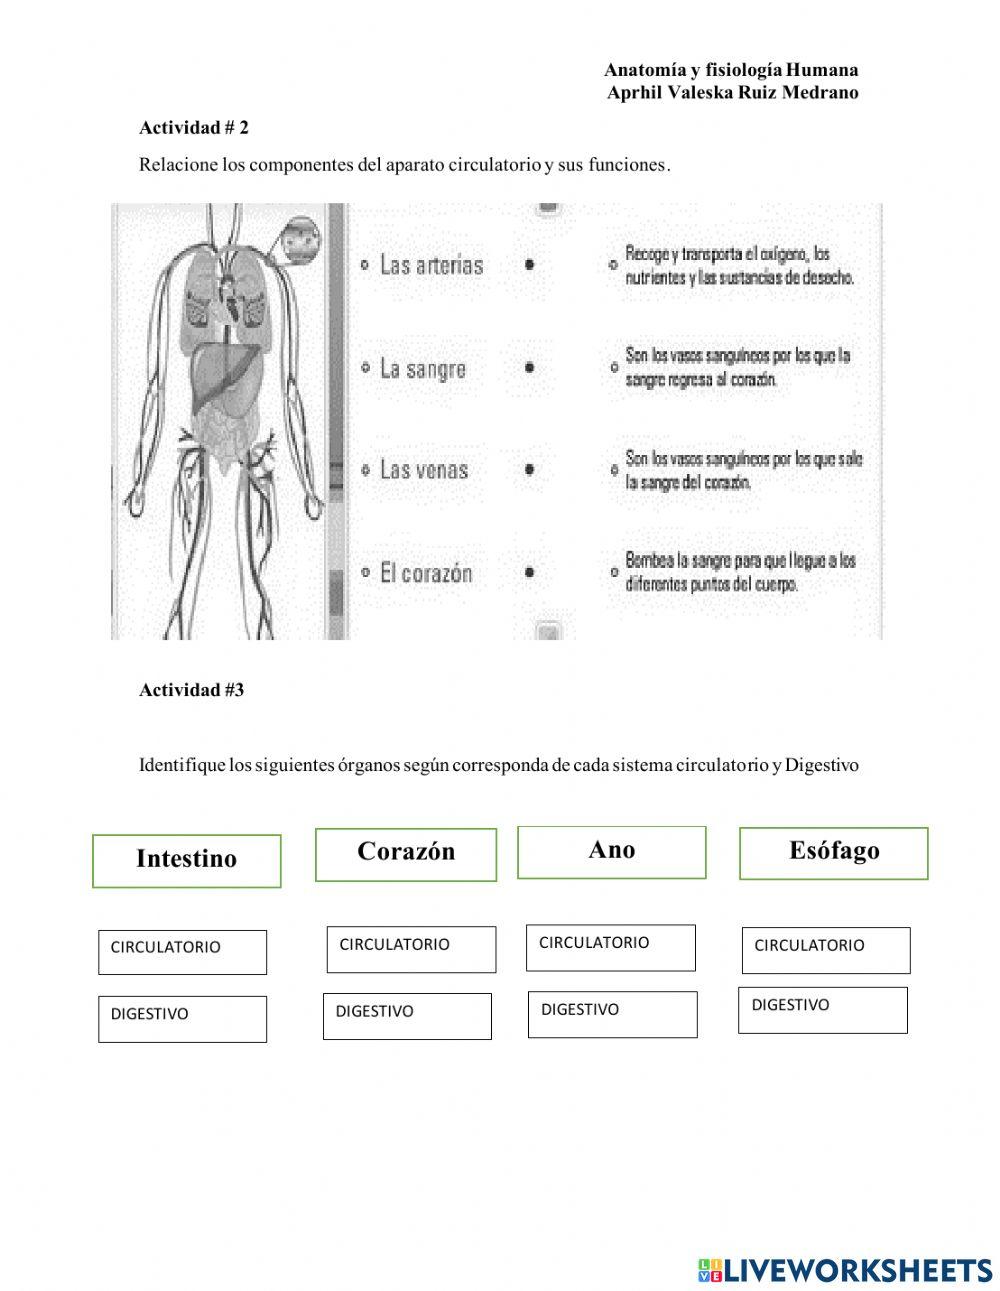 Sistema circulatorio y digetsivo